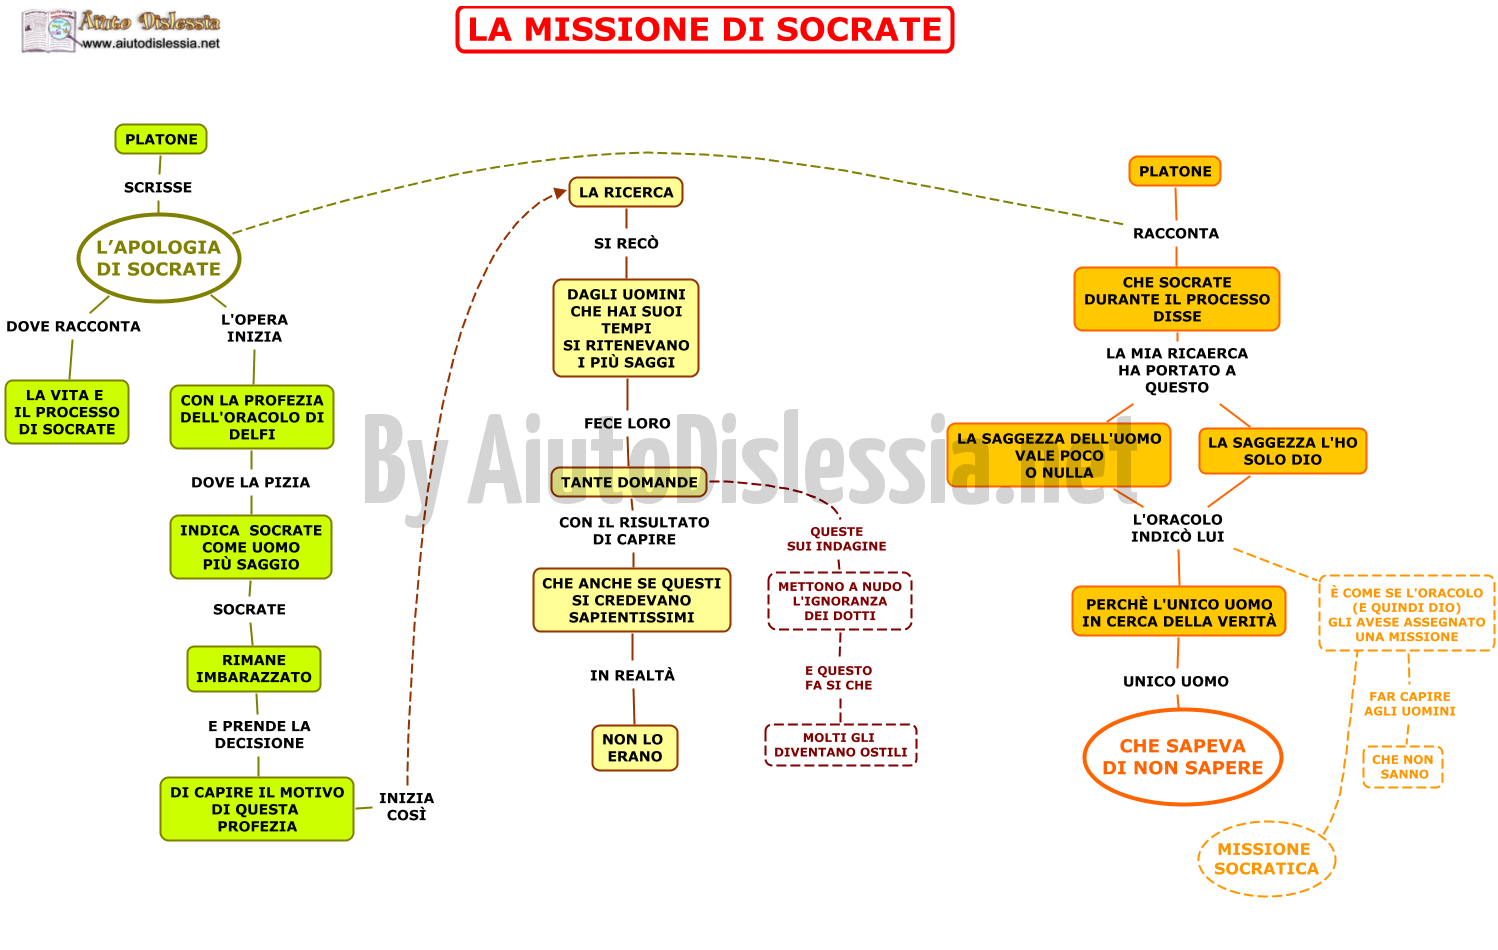 05.-LA-MISSIONE-DI-SOCRATE